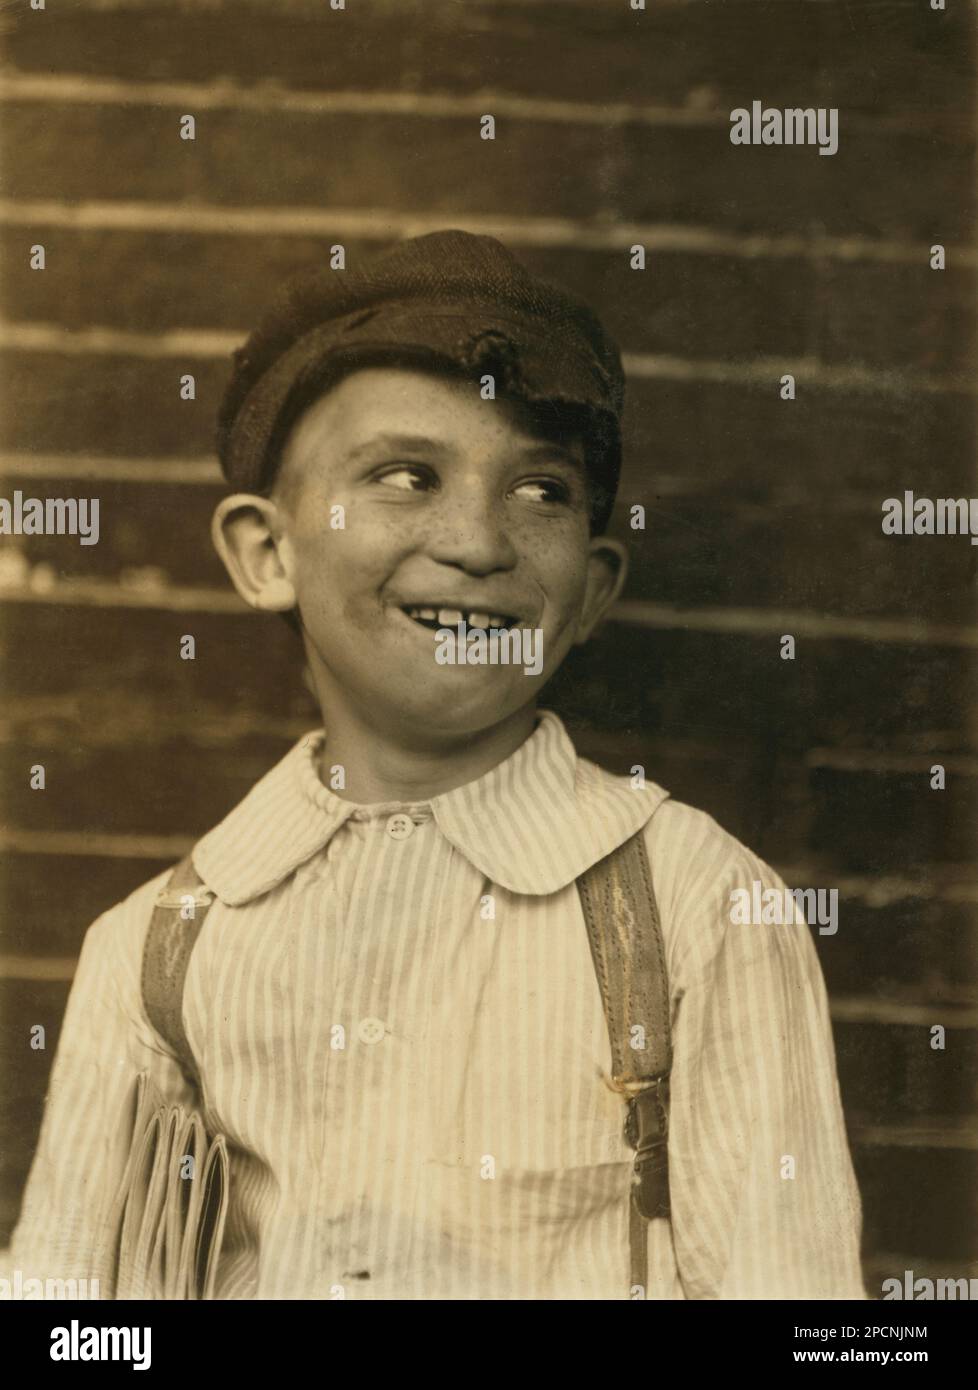 1910, Mai, St. Louis, Missouri, USA: "Lever" eine junge Neuling. - NEWSBOYS , Fotos von LEWIS HINE ( 1874 - 1940 ) - - NEWSBOYS - BAMBINI -- LAVORATORI - BAMBINO - KINDERARBEITER - FABRIK - KINDHEIT - KINDHEIT - KIDNIEN - LAVORO MINORILE - LAVORO - ARBEIT - LAVORATORE - ARBEITNEHMER - OPERAIO - CLASSE OPERAIA LAVORATRICE - ARBEITERKLASSE - OPERAI - LAVORATORI - LAVORO - UNITI D' AMERICA - FOTO STORICHE - GESCHICHTE - PORTRÄT - RITRATTO - TEMPI MODERNI - MODERN TIMES - HAT - CAPPELLO - TURNO DI LAVORO - GIORNALAIO - GIORNALAI - STRILLONI - VENDITORI DI GIORNALI QUOTIDINI AMBULANTI - AMBULANTE Stockfoto